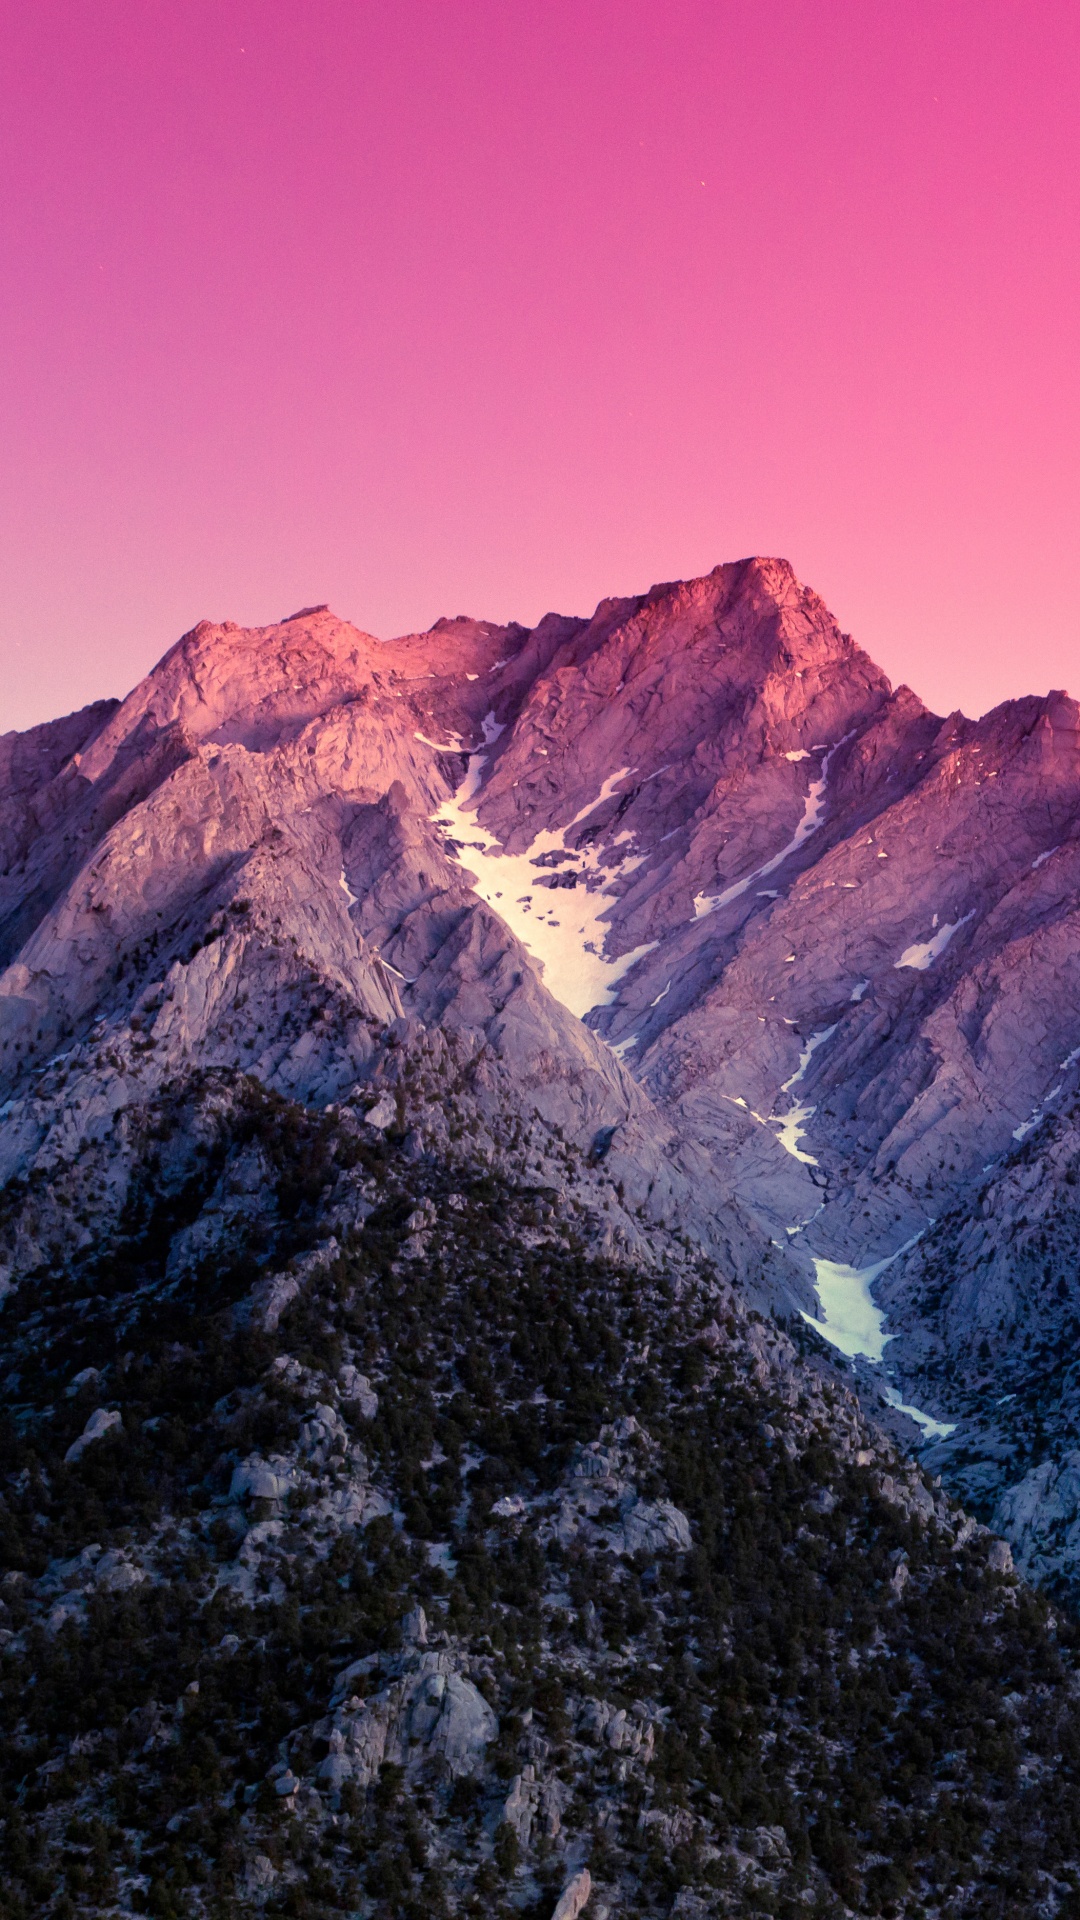 Montagne Rocheuse Brune et Grise Sous Ciel Bleu Pendant la Journée. Wallpaper in 1080x1920 Resolution